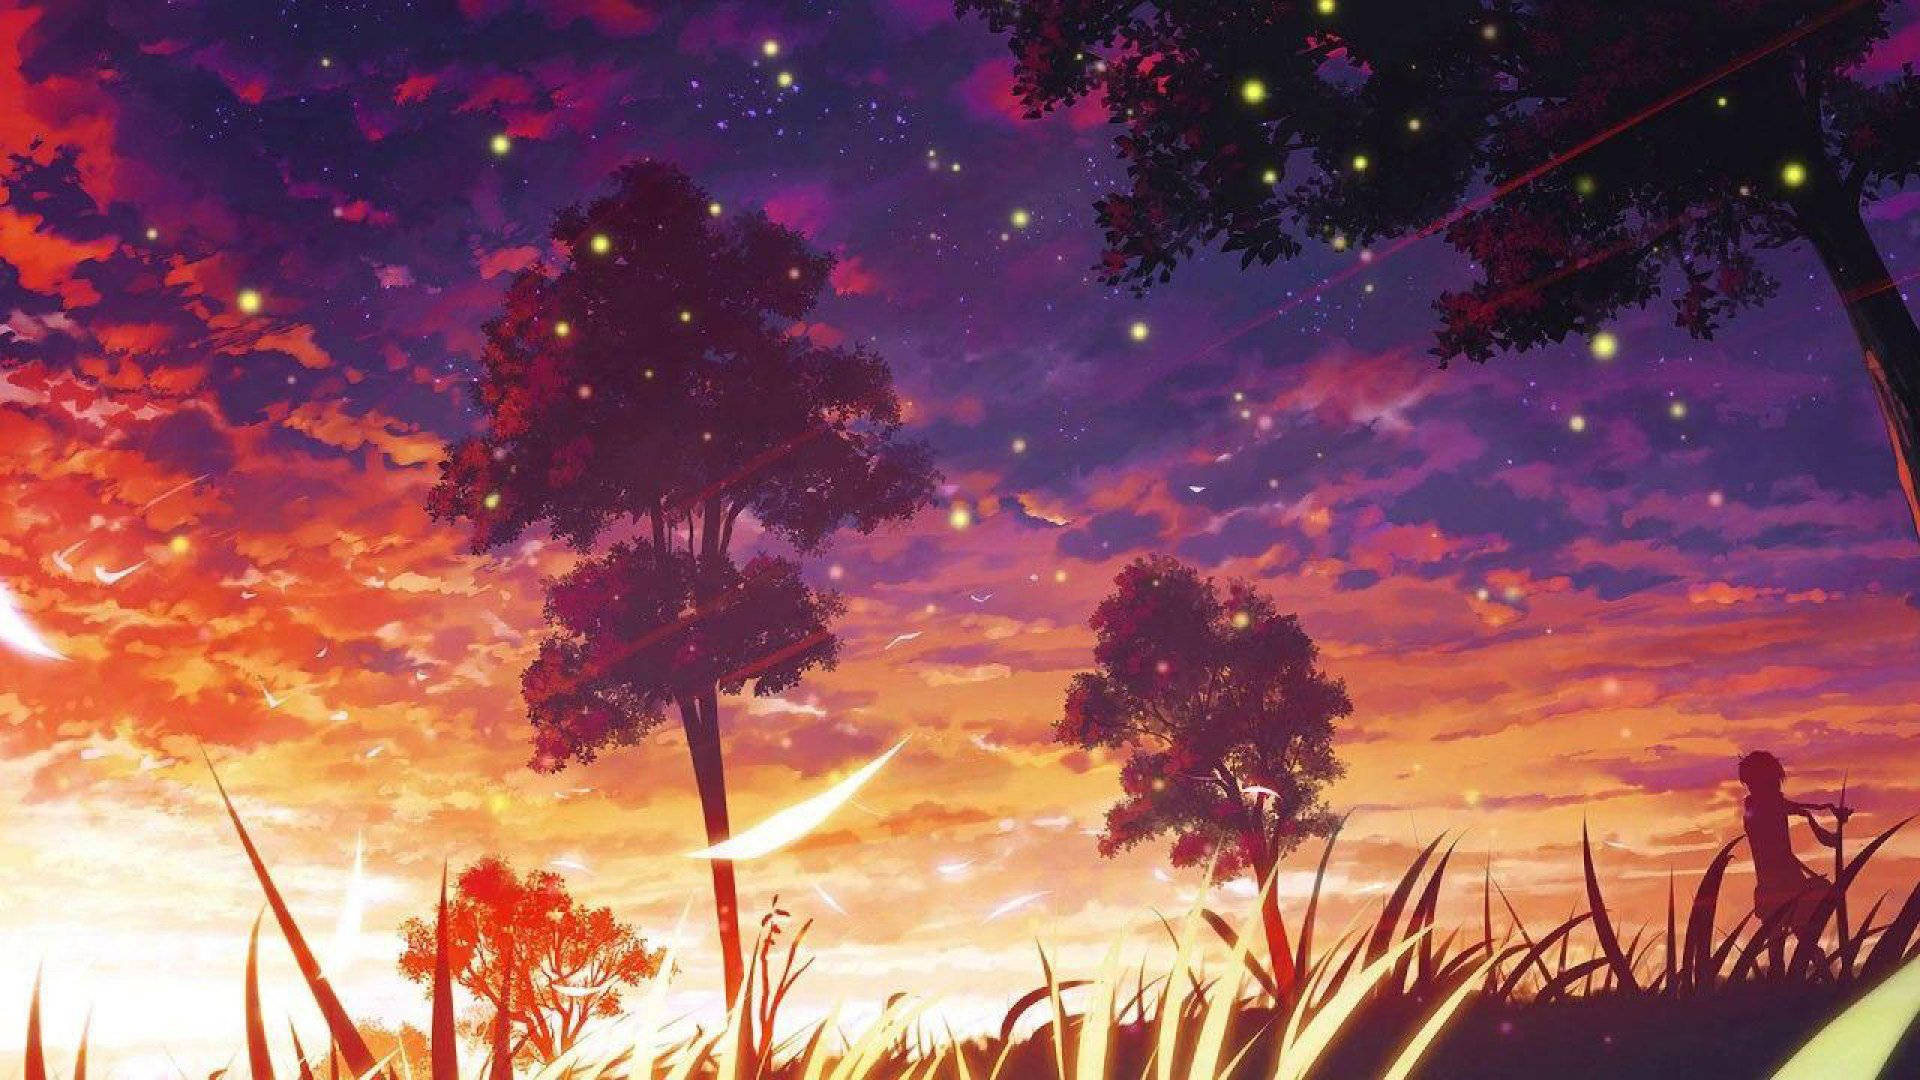 Aesthetic Art Fireflies Wallpaper